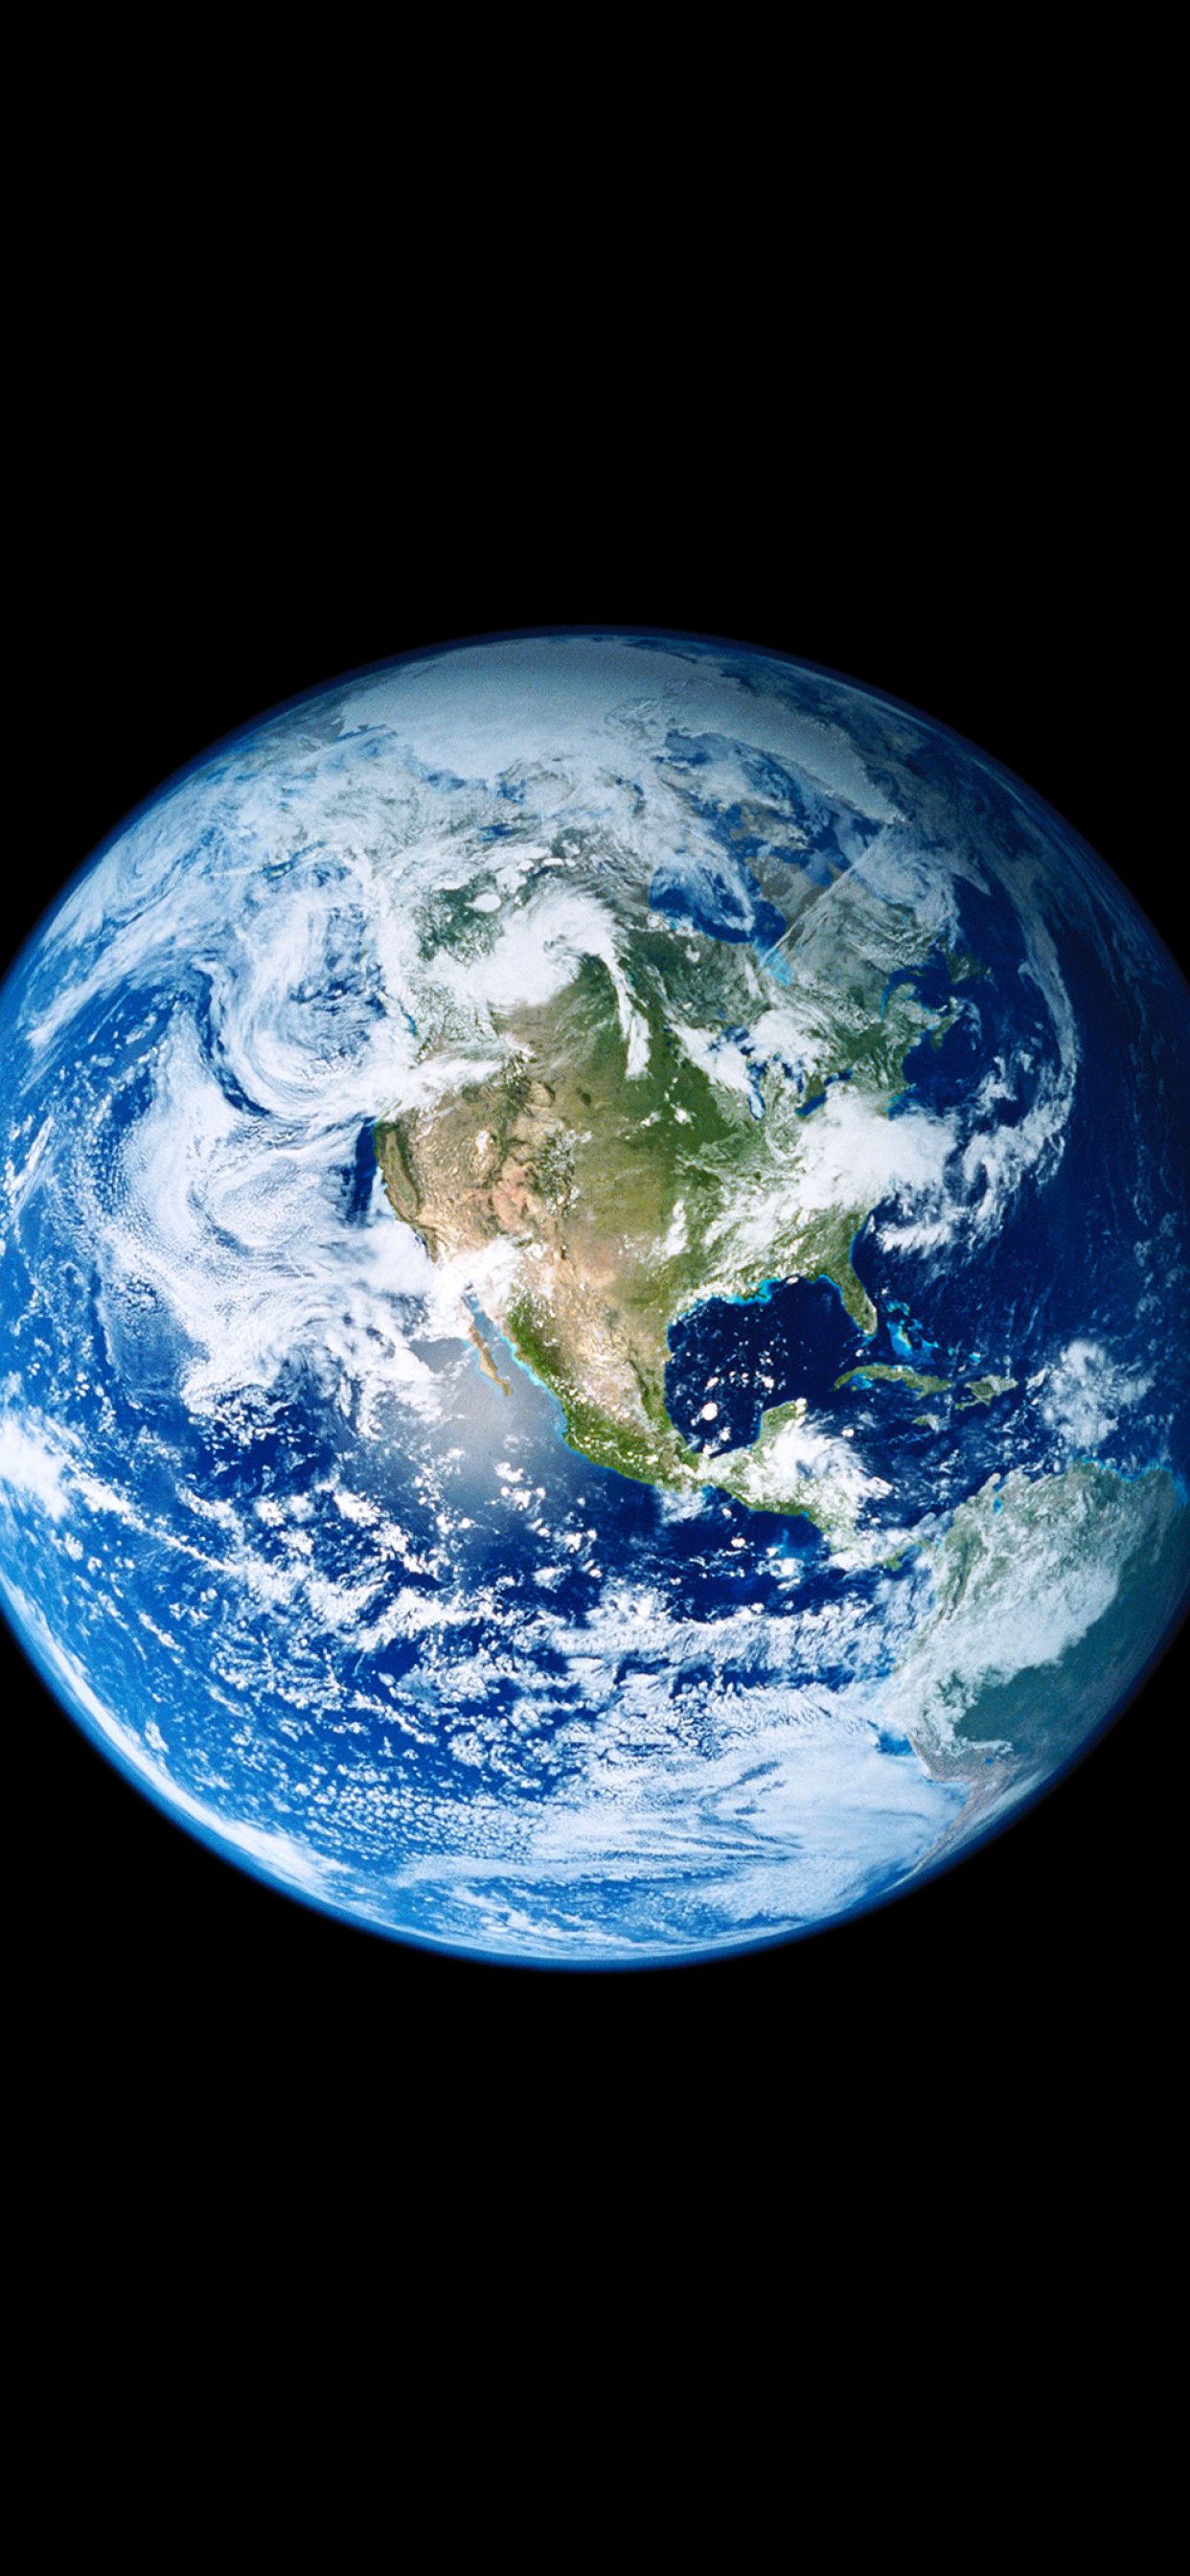 Nếu bạn đang tìm kiếm một hình nền Earth chất lượng cao cho chiếc iPhone của mình, hãy truy cập trang web của chúng tôi và khám phá bộ sưu tập hình nền Earth đẹp nhất. Chúng tôi cung cấp những bức ảnh nền Earth với độ phân giải cao, được chụp từ không gian, mang lại cho bạn cảm giác đích thực như đang nhìn trực tiếp vào hành tinh xanh của chúng ta. 